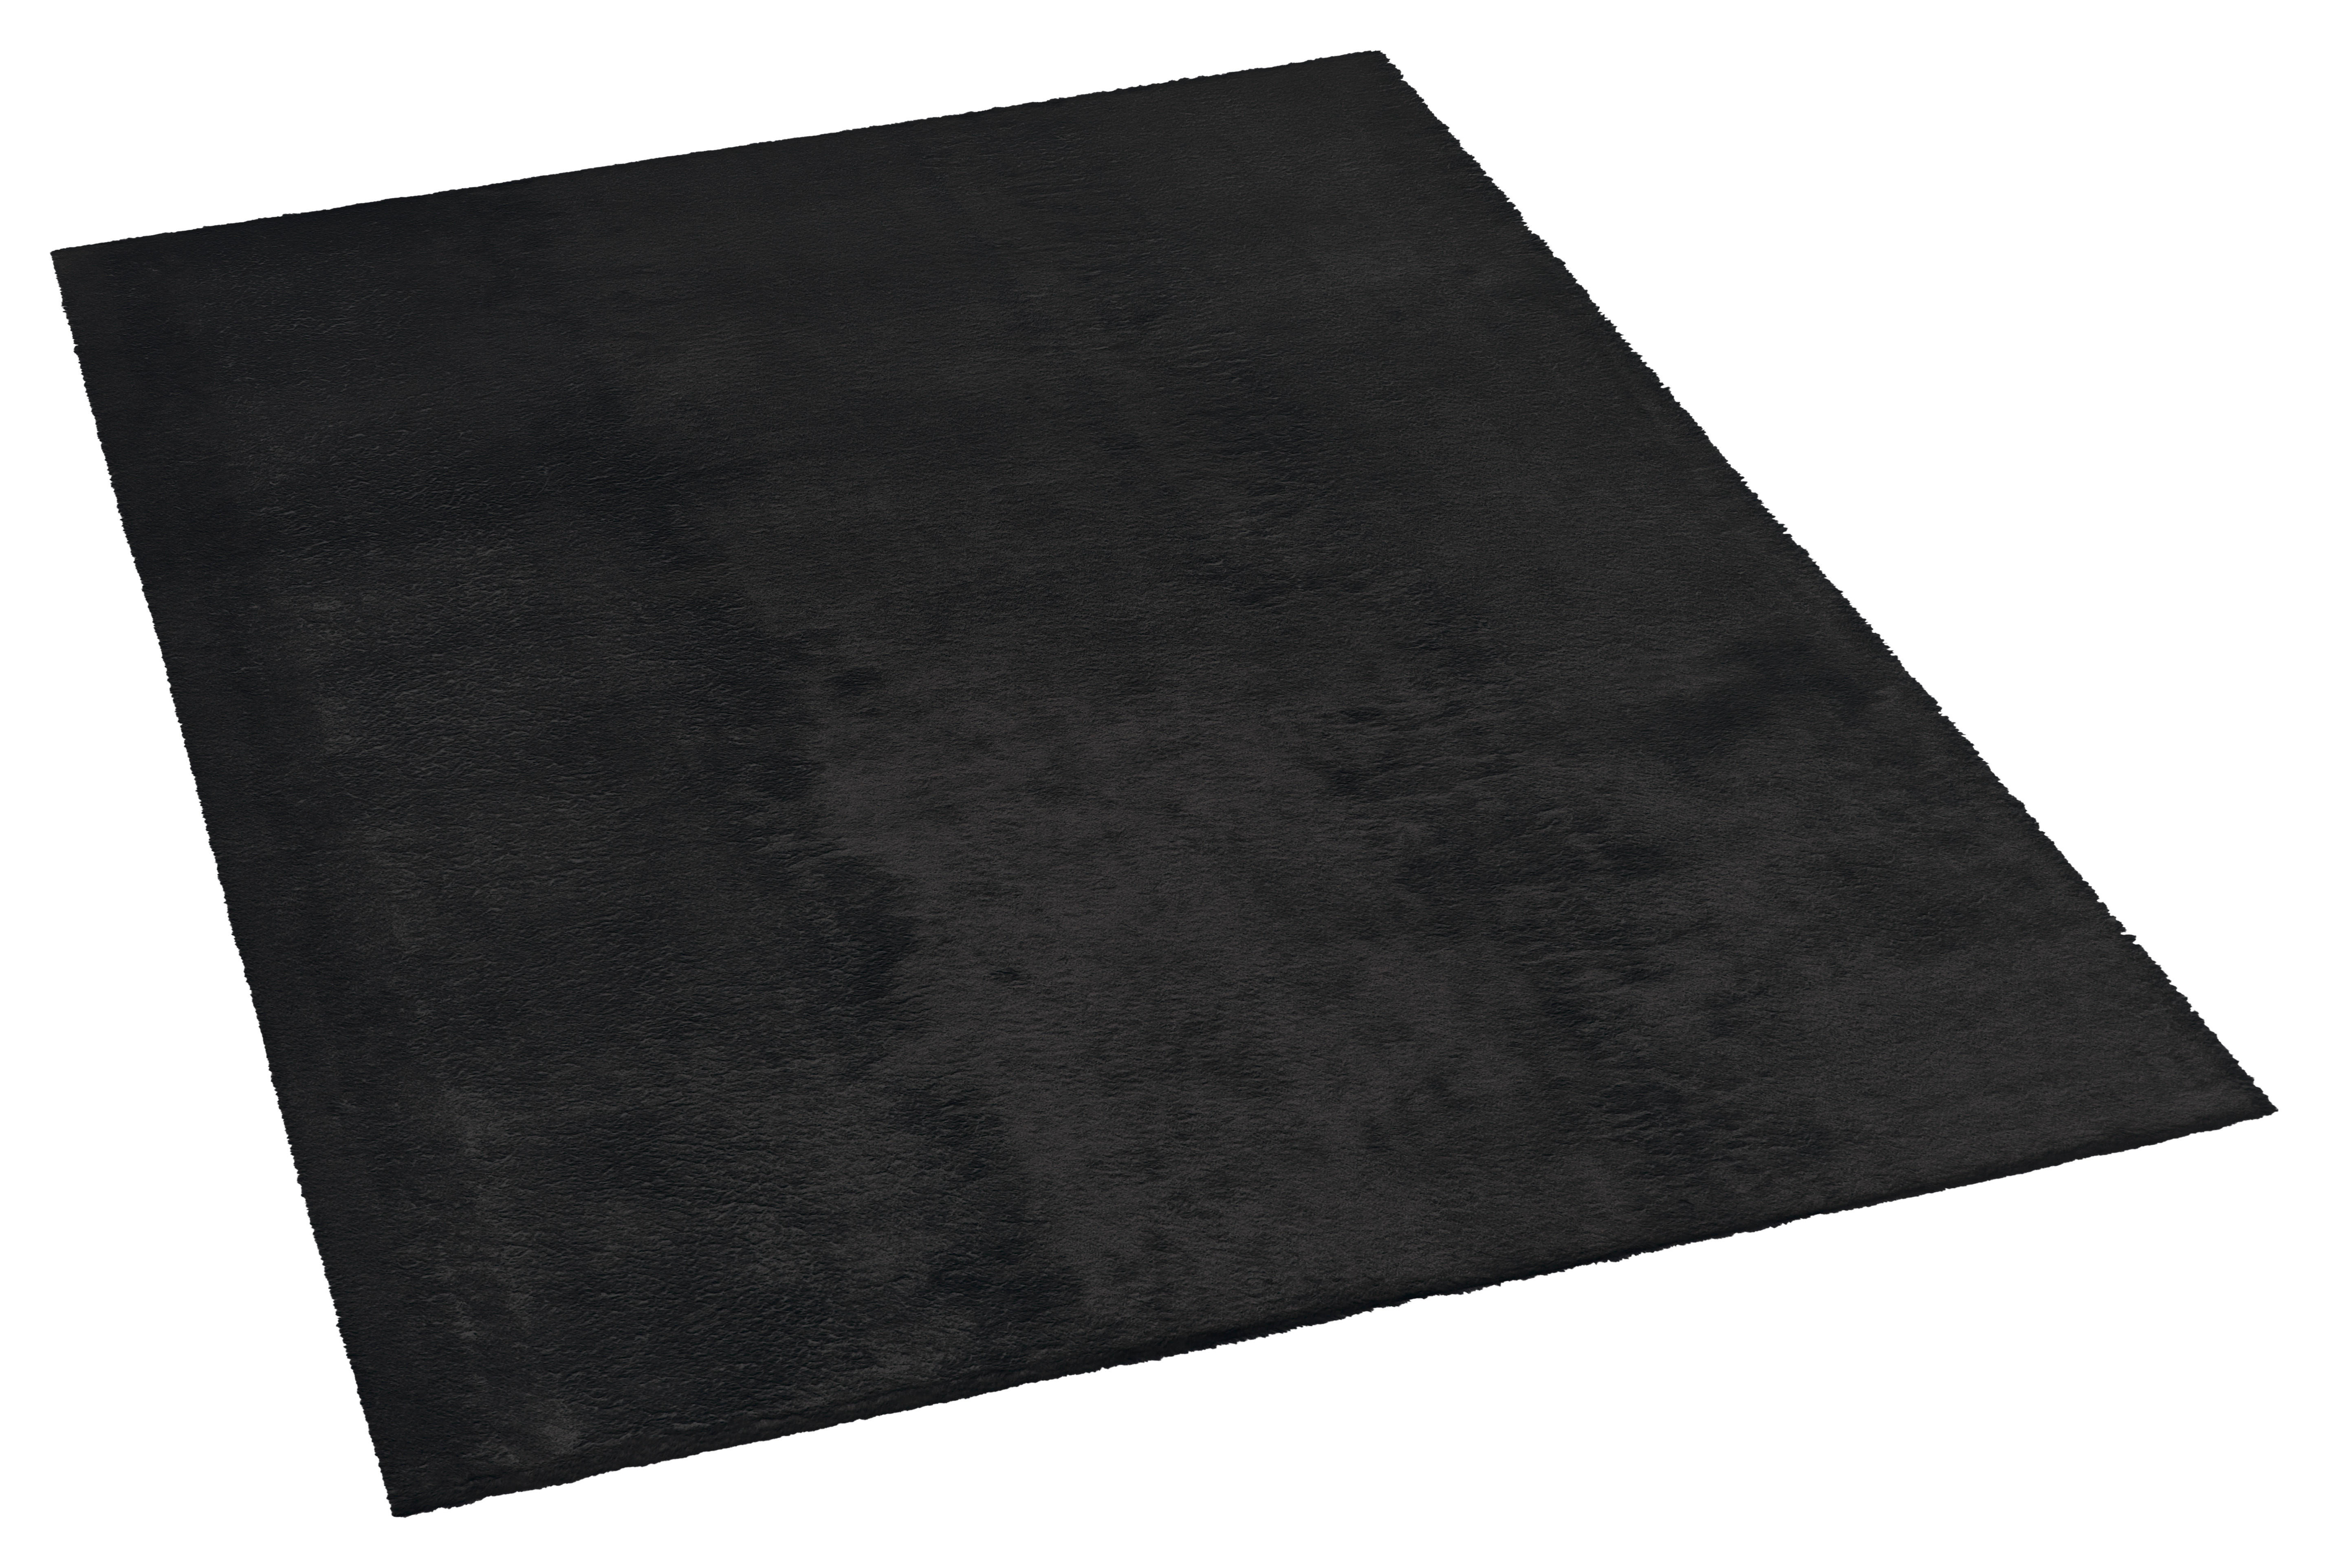 Teppich Fuzzy Eco schwarz B/L: ca. 80x140 cm Fuzzy Eco - schwarz (80,00/140,00cm)